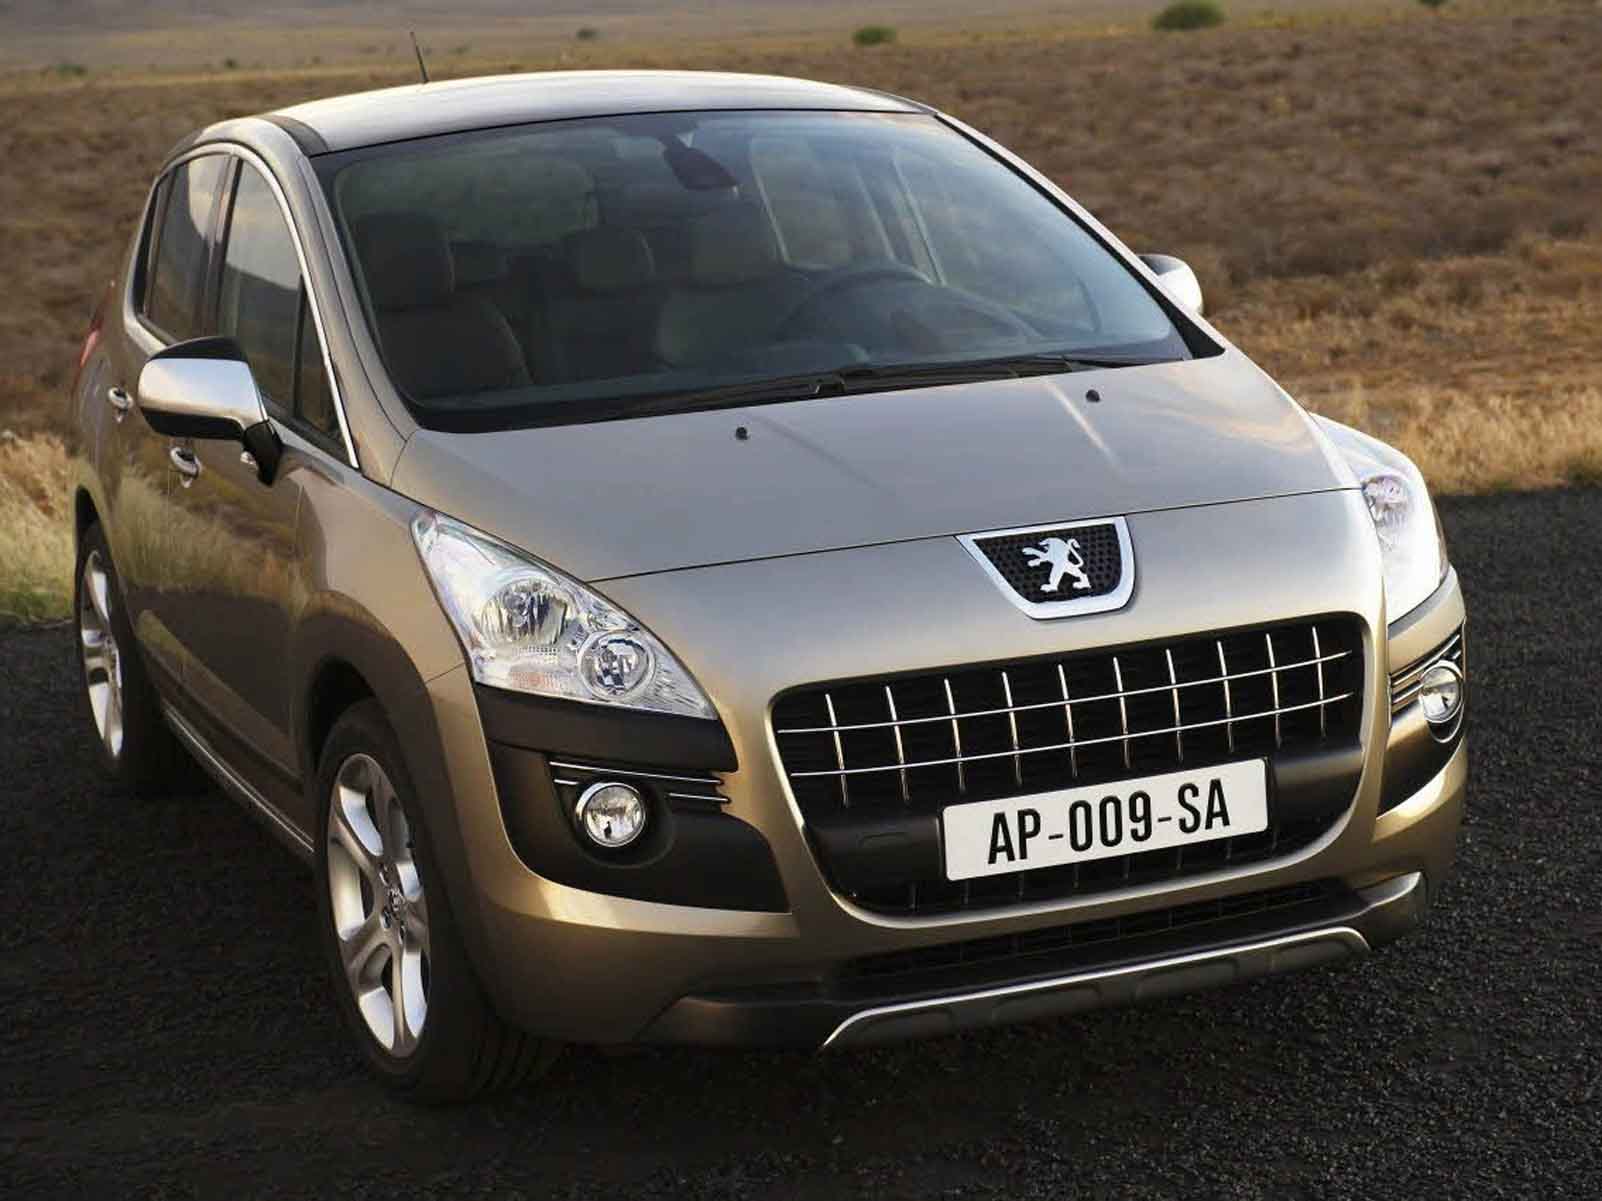 La Peugeot 3008 est un crossover compact, volumique et responsable. Elle représente une offre nouvel...